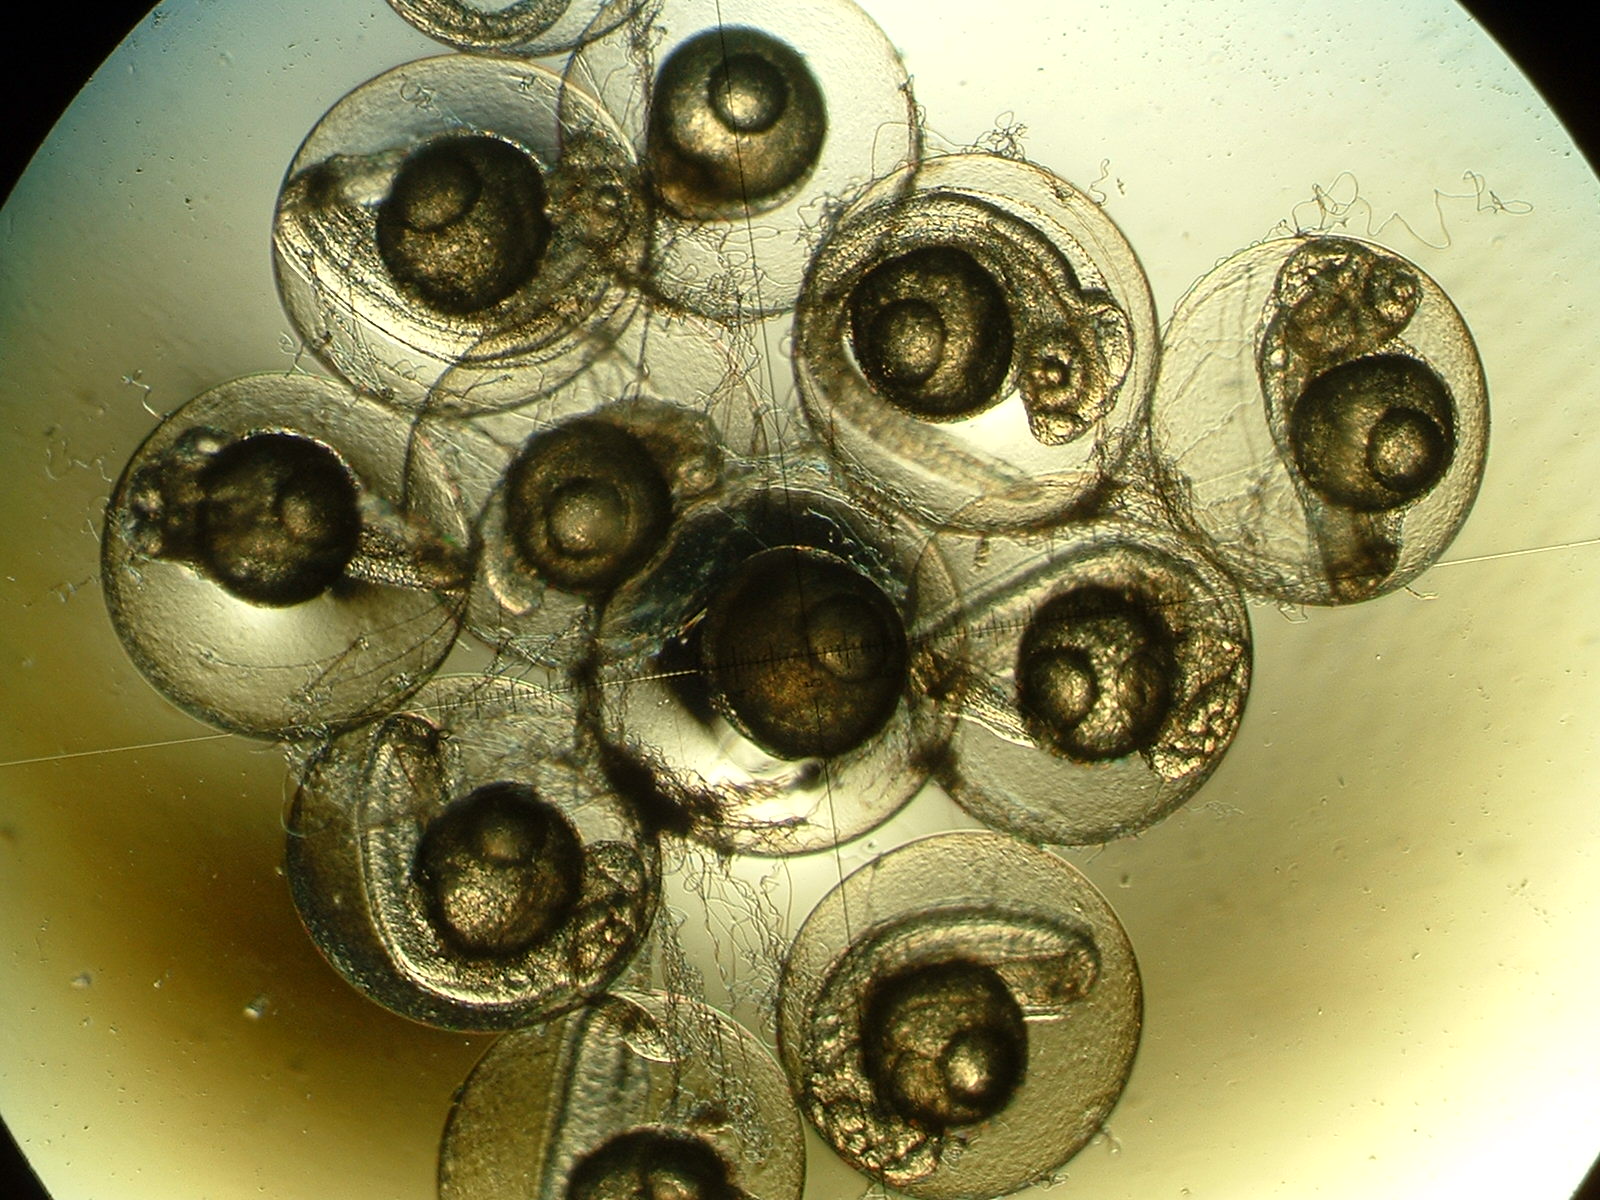 embrioni di pseudochronis fridmani, al microscopio ottico 10x, a 48 ore post fecondazione